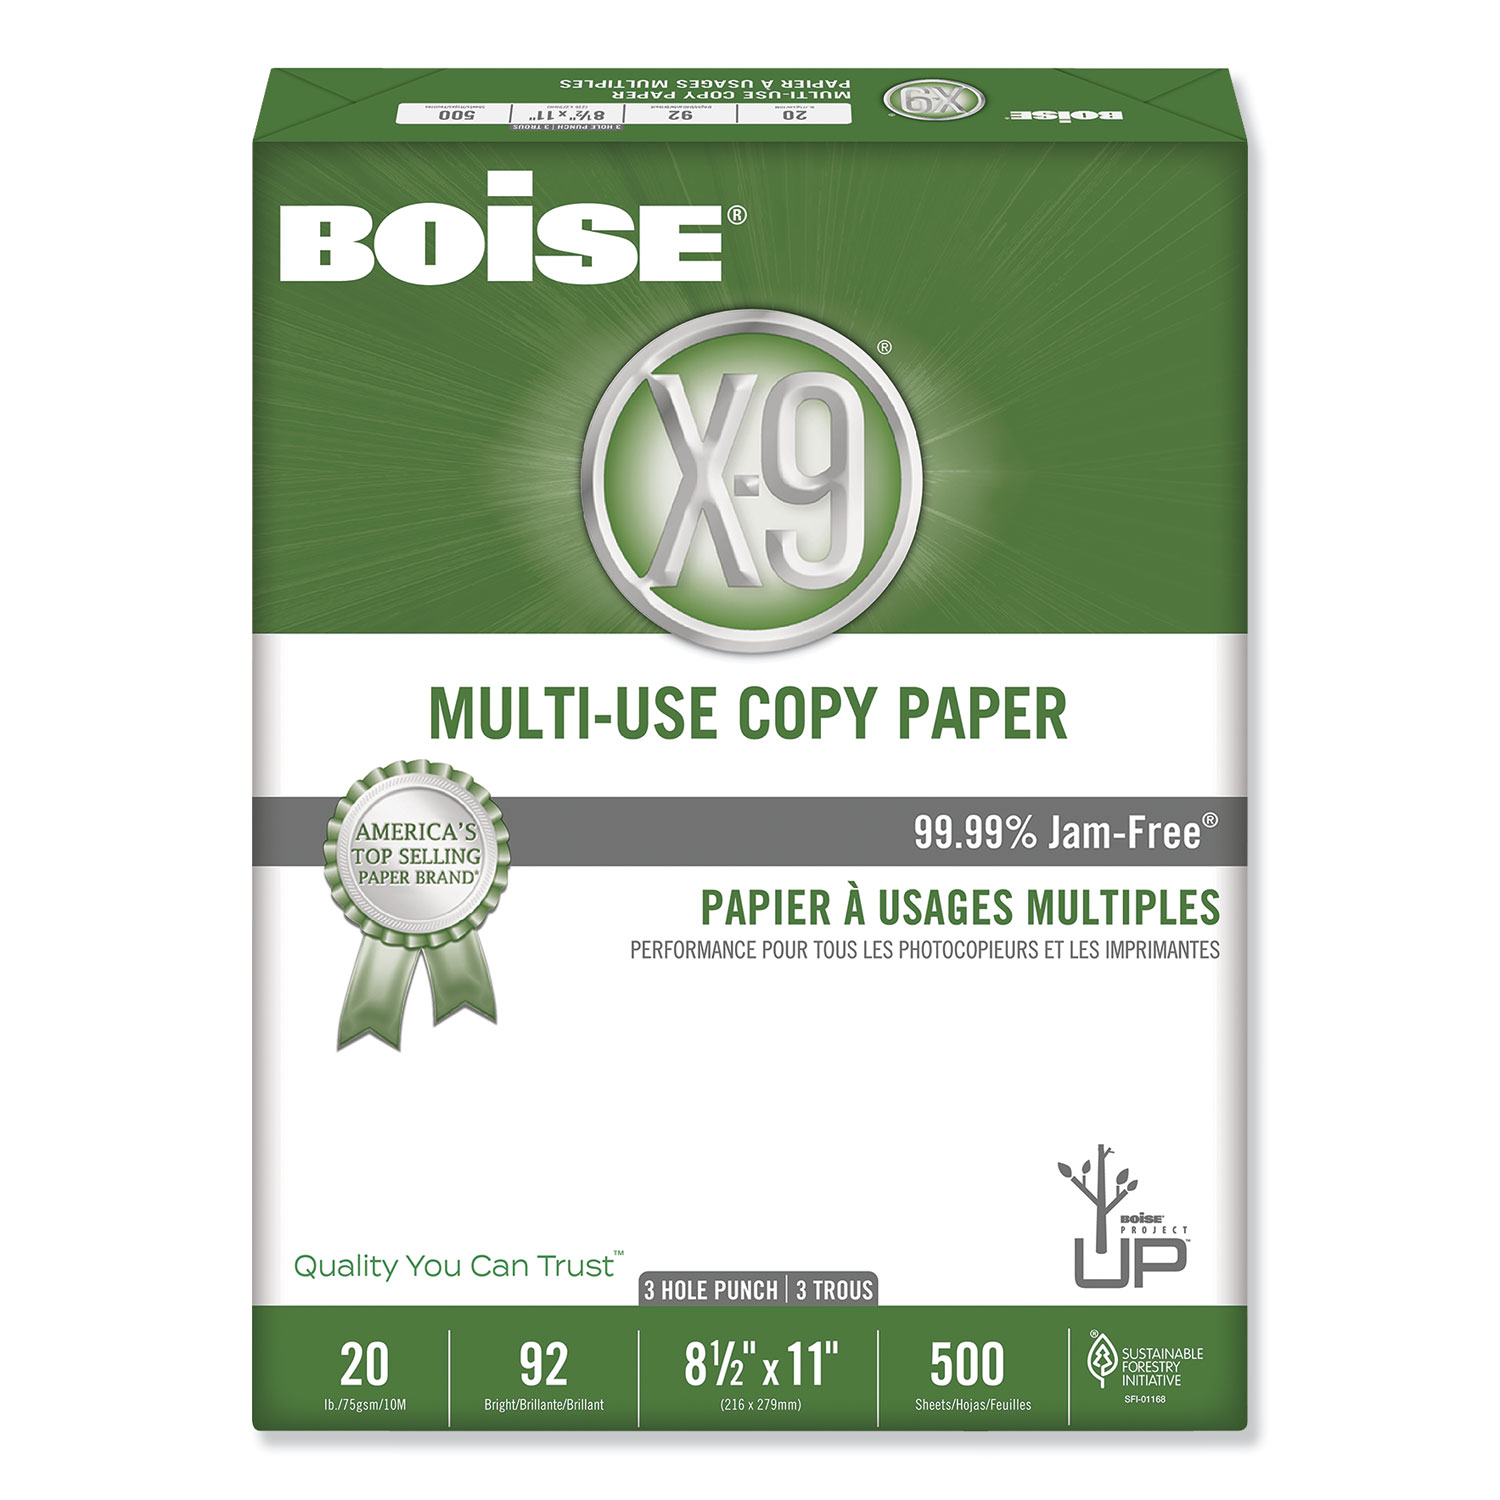  Boise OX-9001-P X-9 Multi-Use Copy Paper, 92 Bright, 3-Hole, 20lb, 8.5 x 11, White, 500 Sheets/Ream, 10 Reams/Carton (CASOX9001P) 